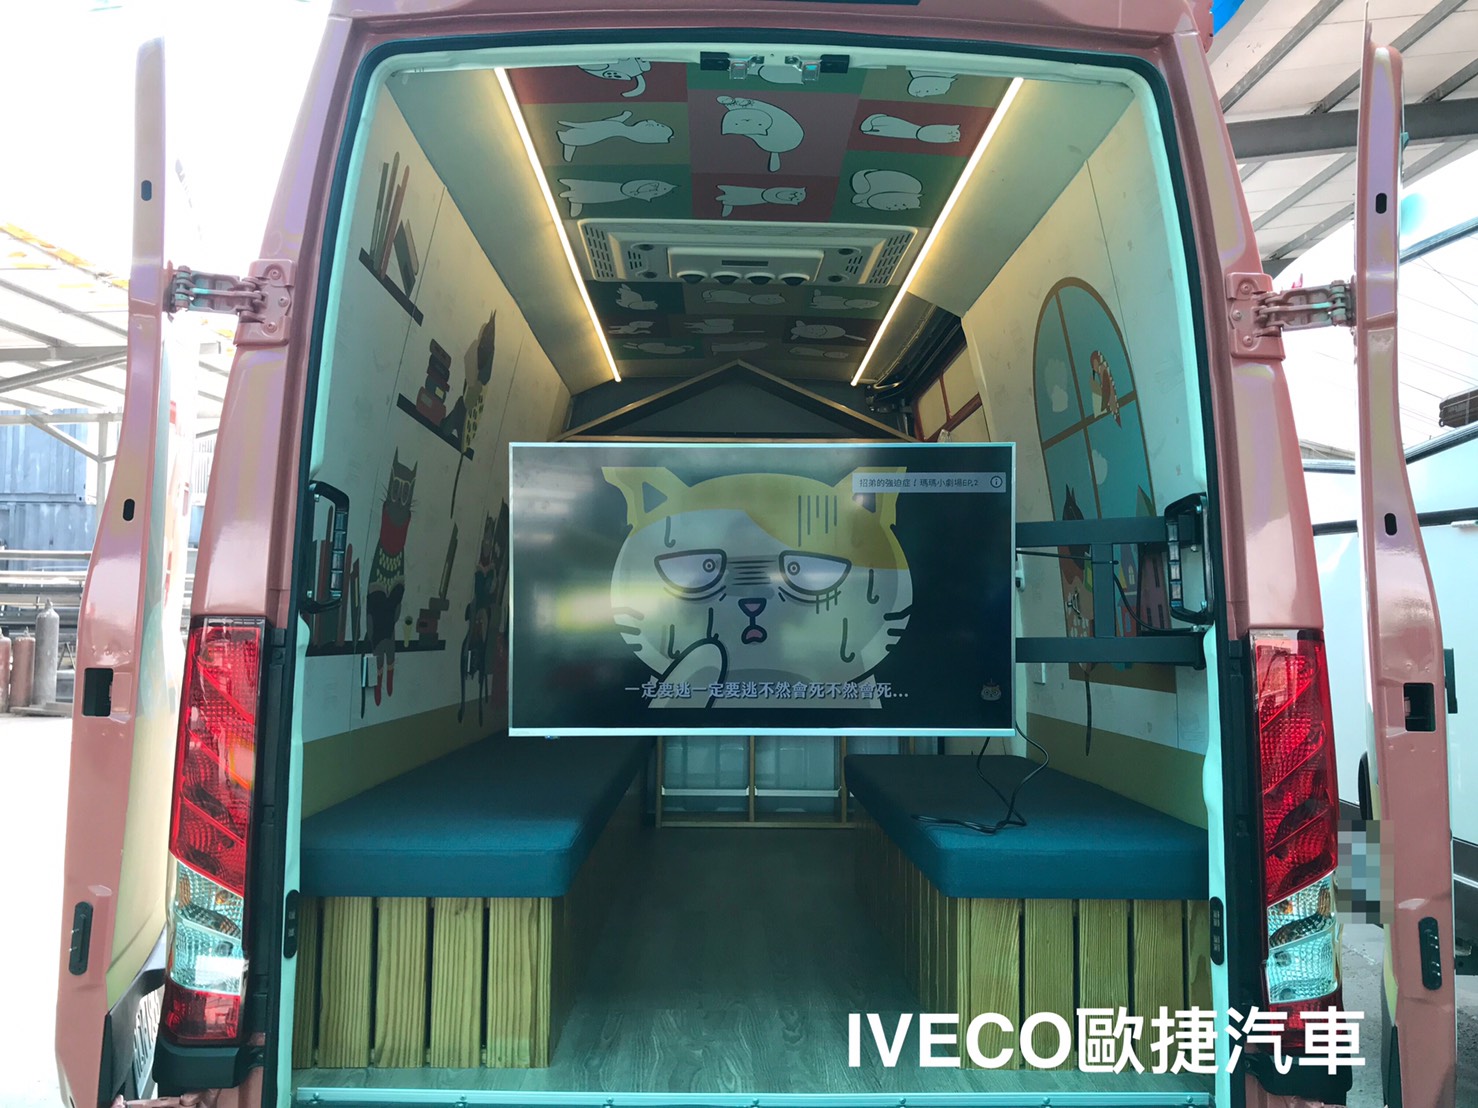 IVECO移動式全新世代書車